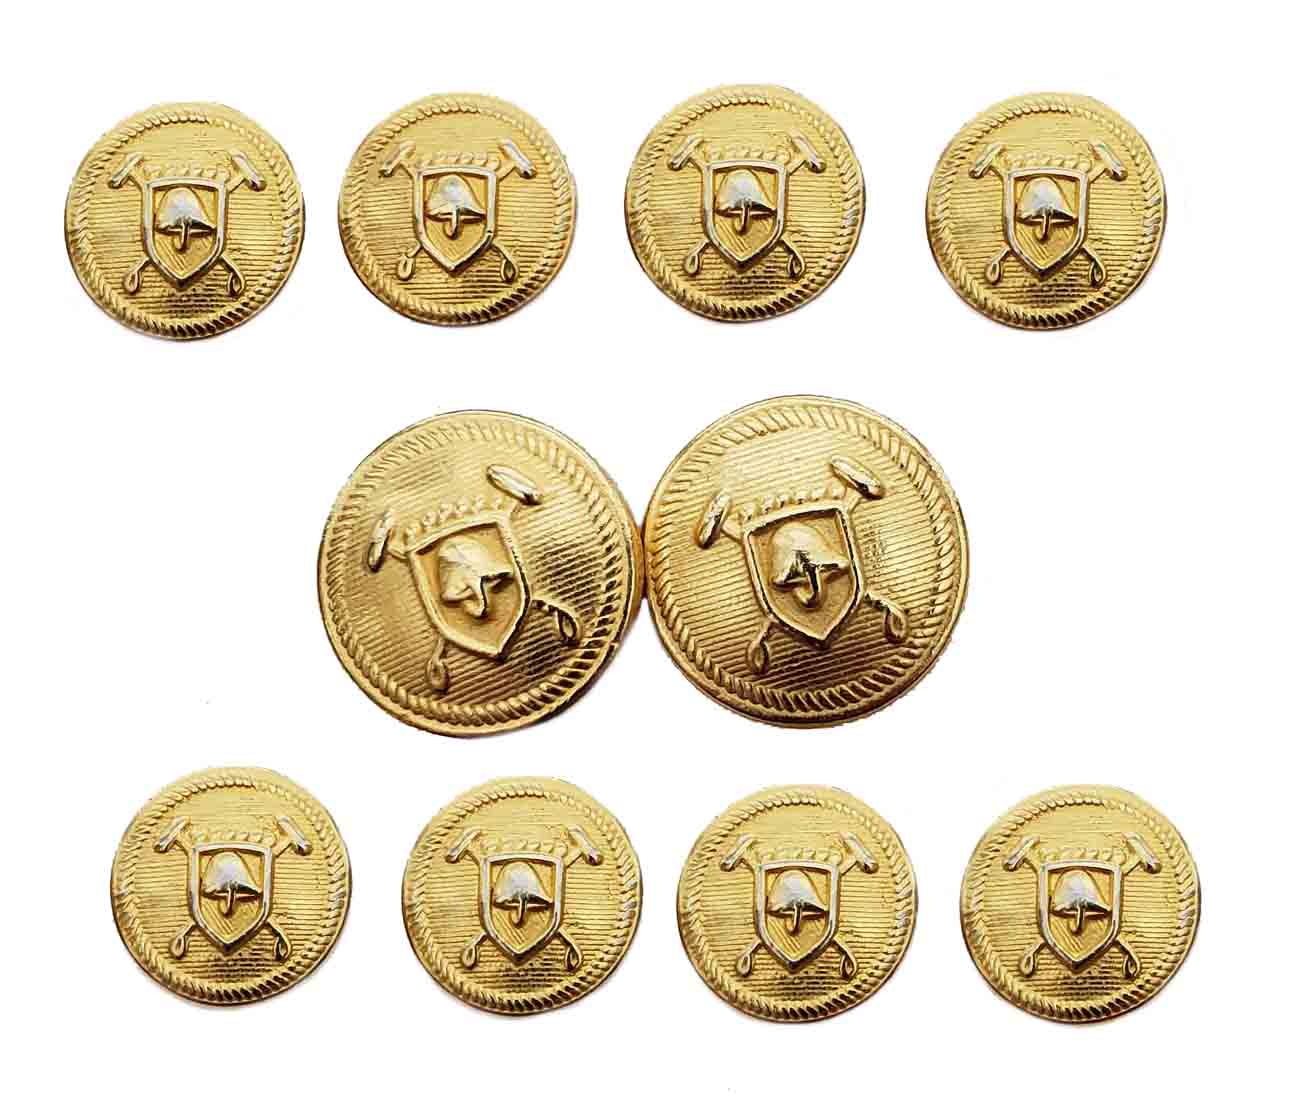 NEW Polo by Ralph Lauren Blazer Buttons Set Shield Mallets Gold Brass Shank M2R Men's